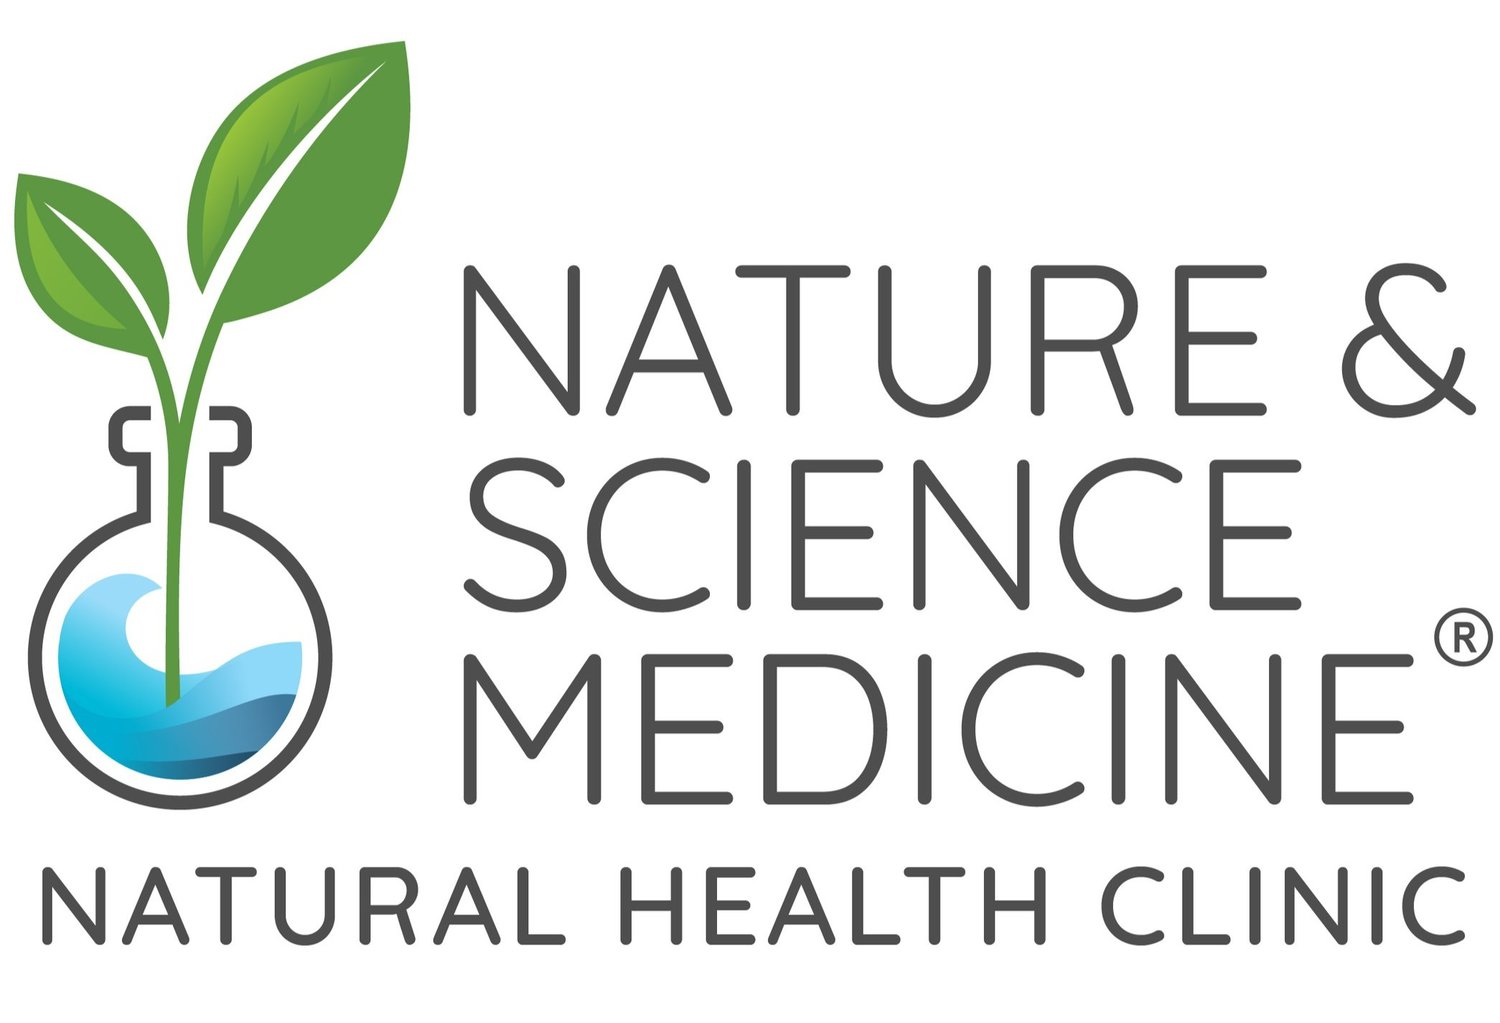 Nature & Science Medicine®